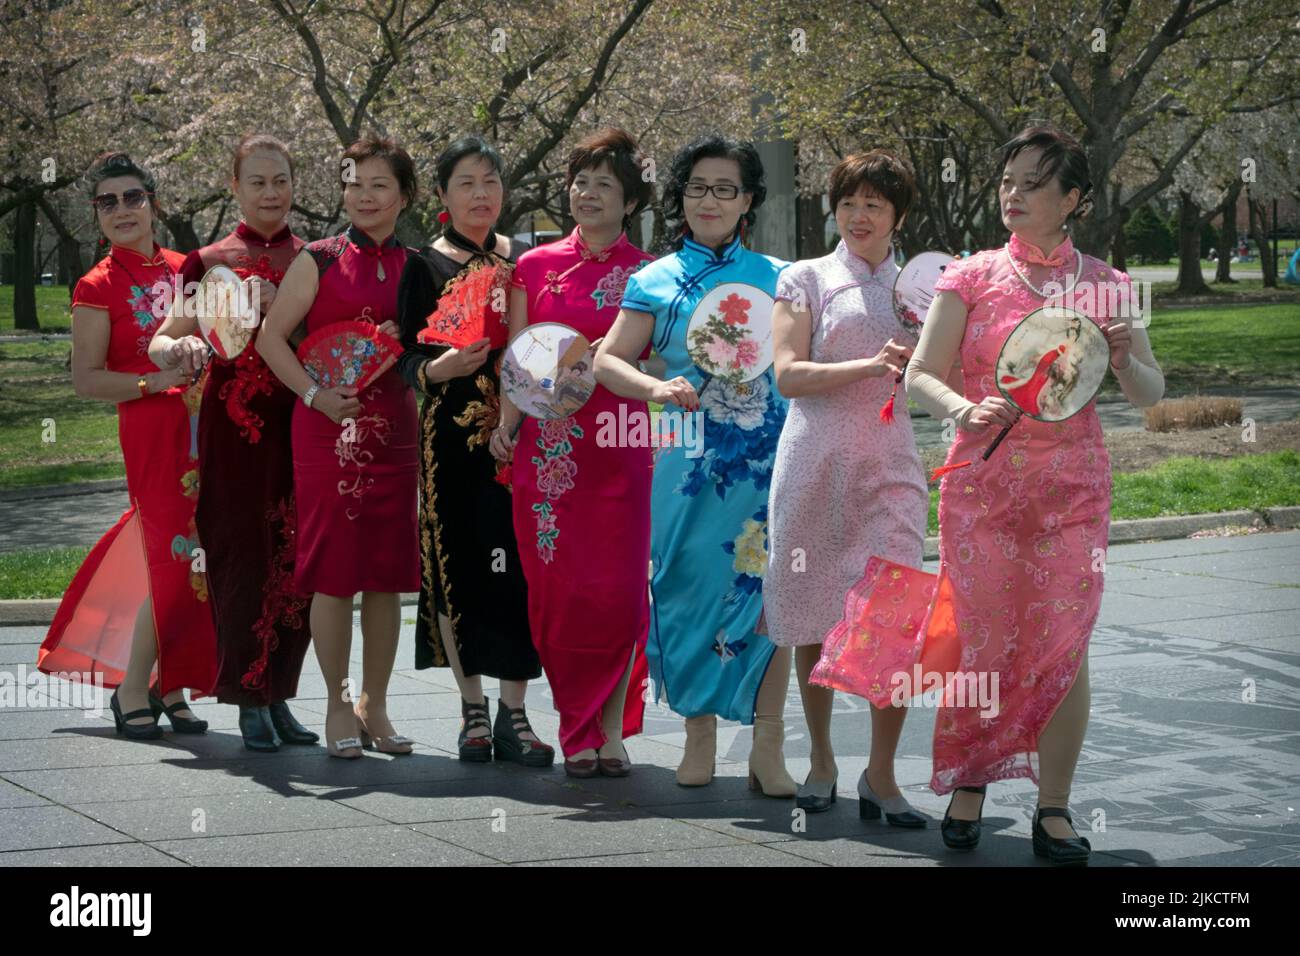 8 miembros de un grupo de baile chino-americanos posan para las fotos que sostienen a sus fans. En Flushing Meadows Corona Park en Queens, Nueva York. Foto de stock